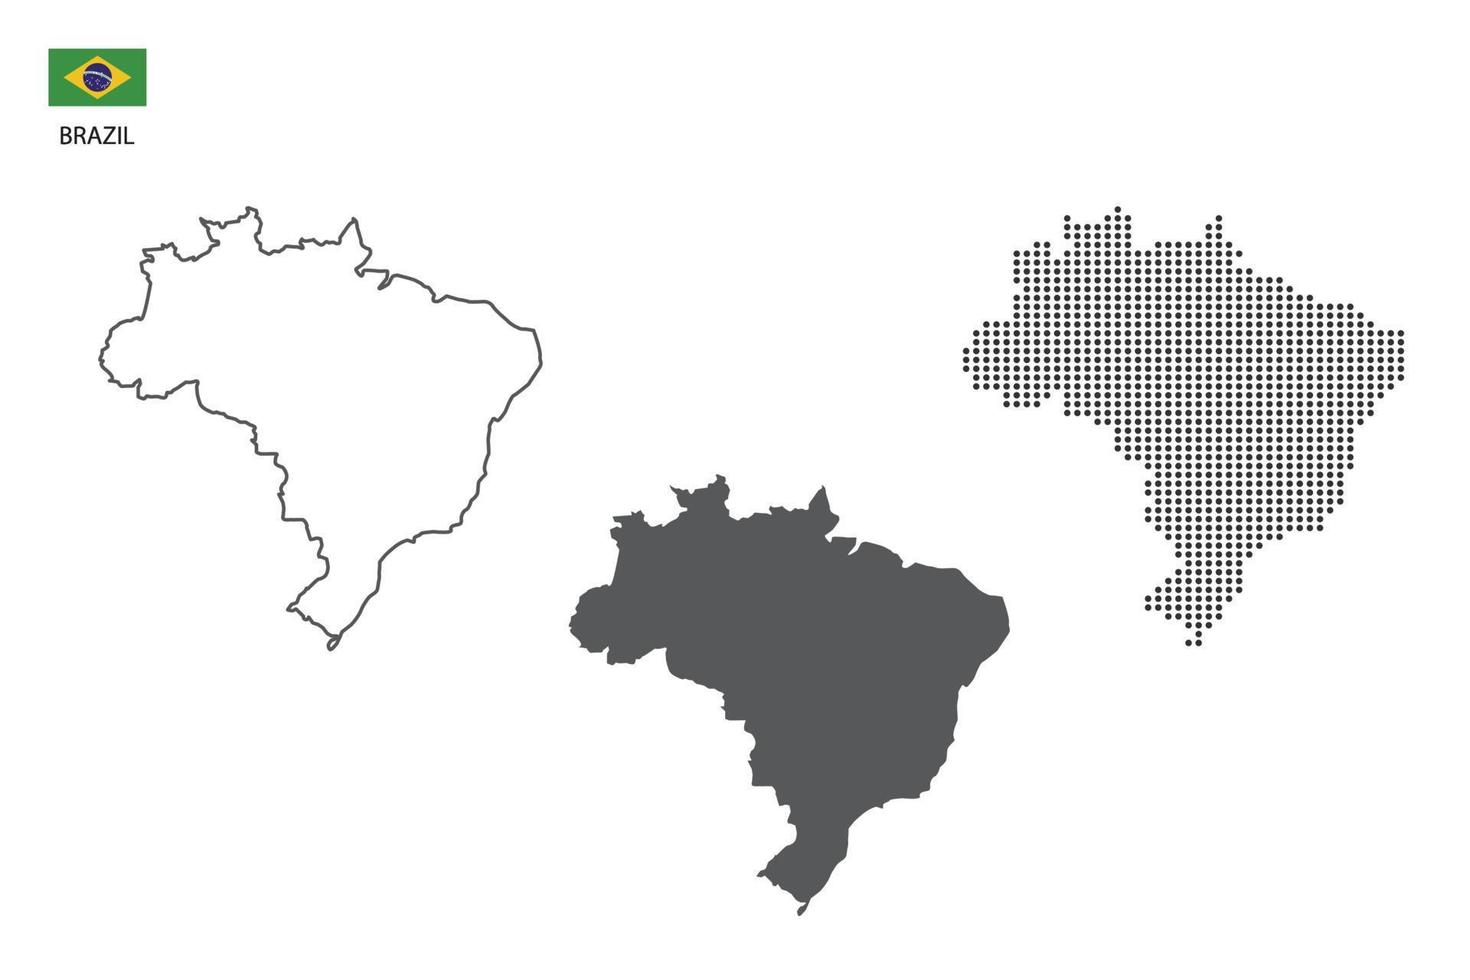 3 versões do vetor da cidade do mapa do brasil pelo estilo de simplicidade de contorno preto fino, estilo de ponto preto e estilo de sombra escura. tudo no fundo branco.